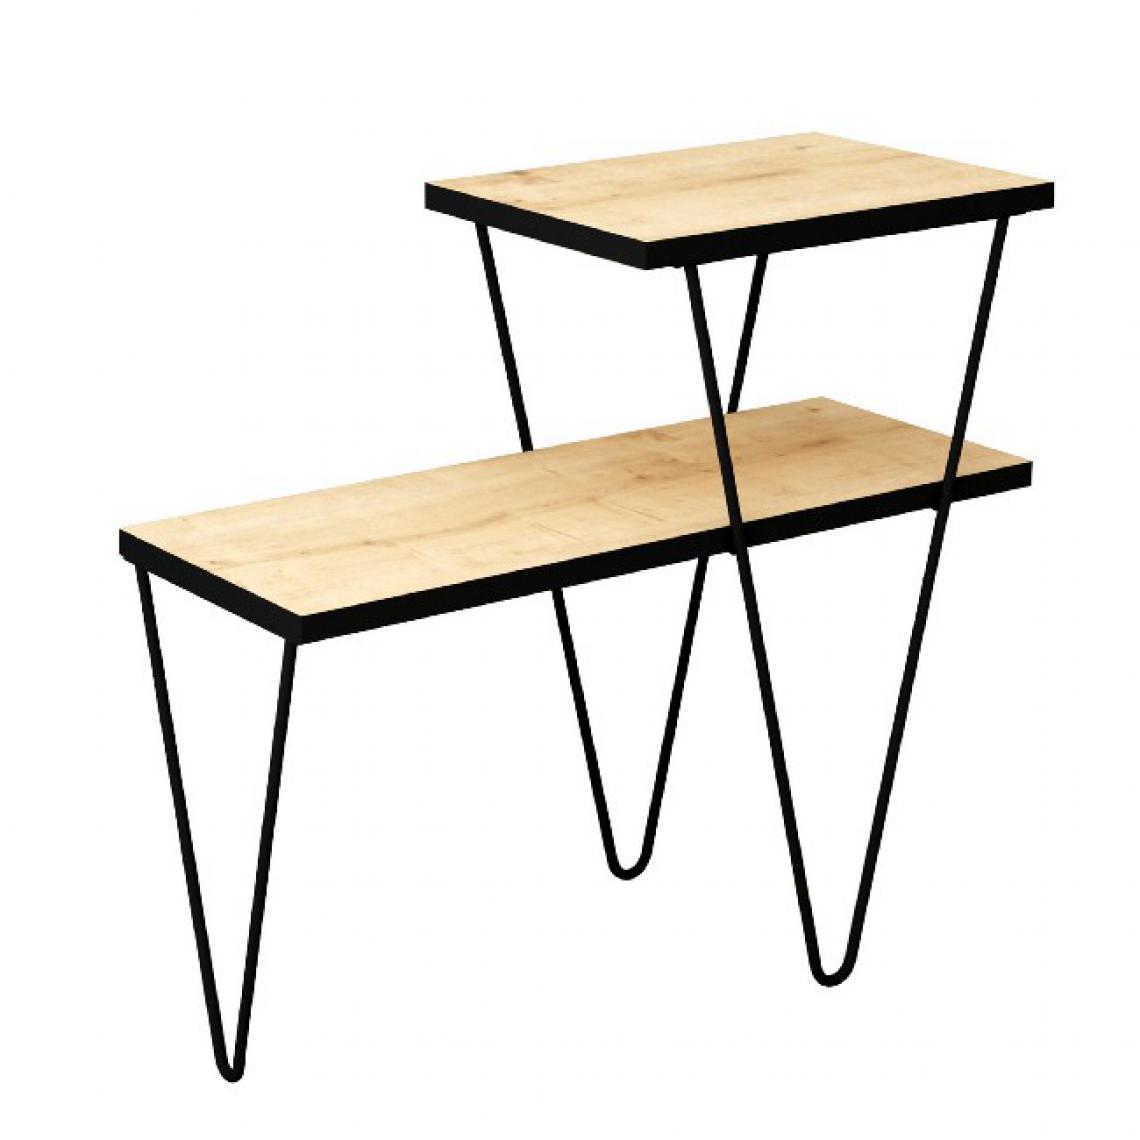 Homemania - Table basse Toros - avec étagères - salon - chêne, bois noir, 60 x 25 x 55 cm - Tables à manger